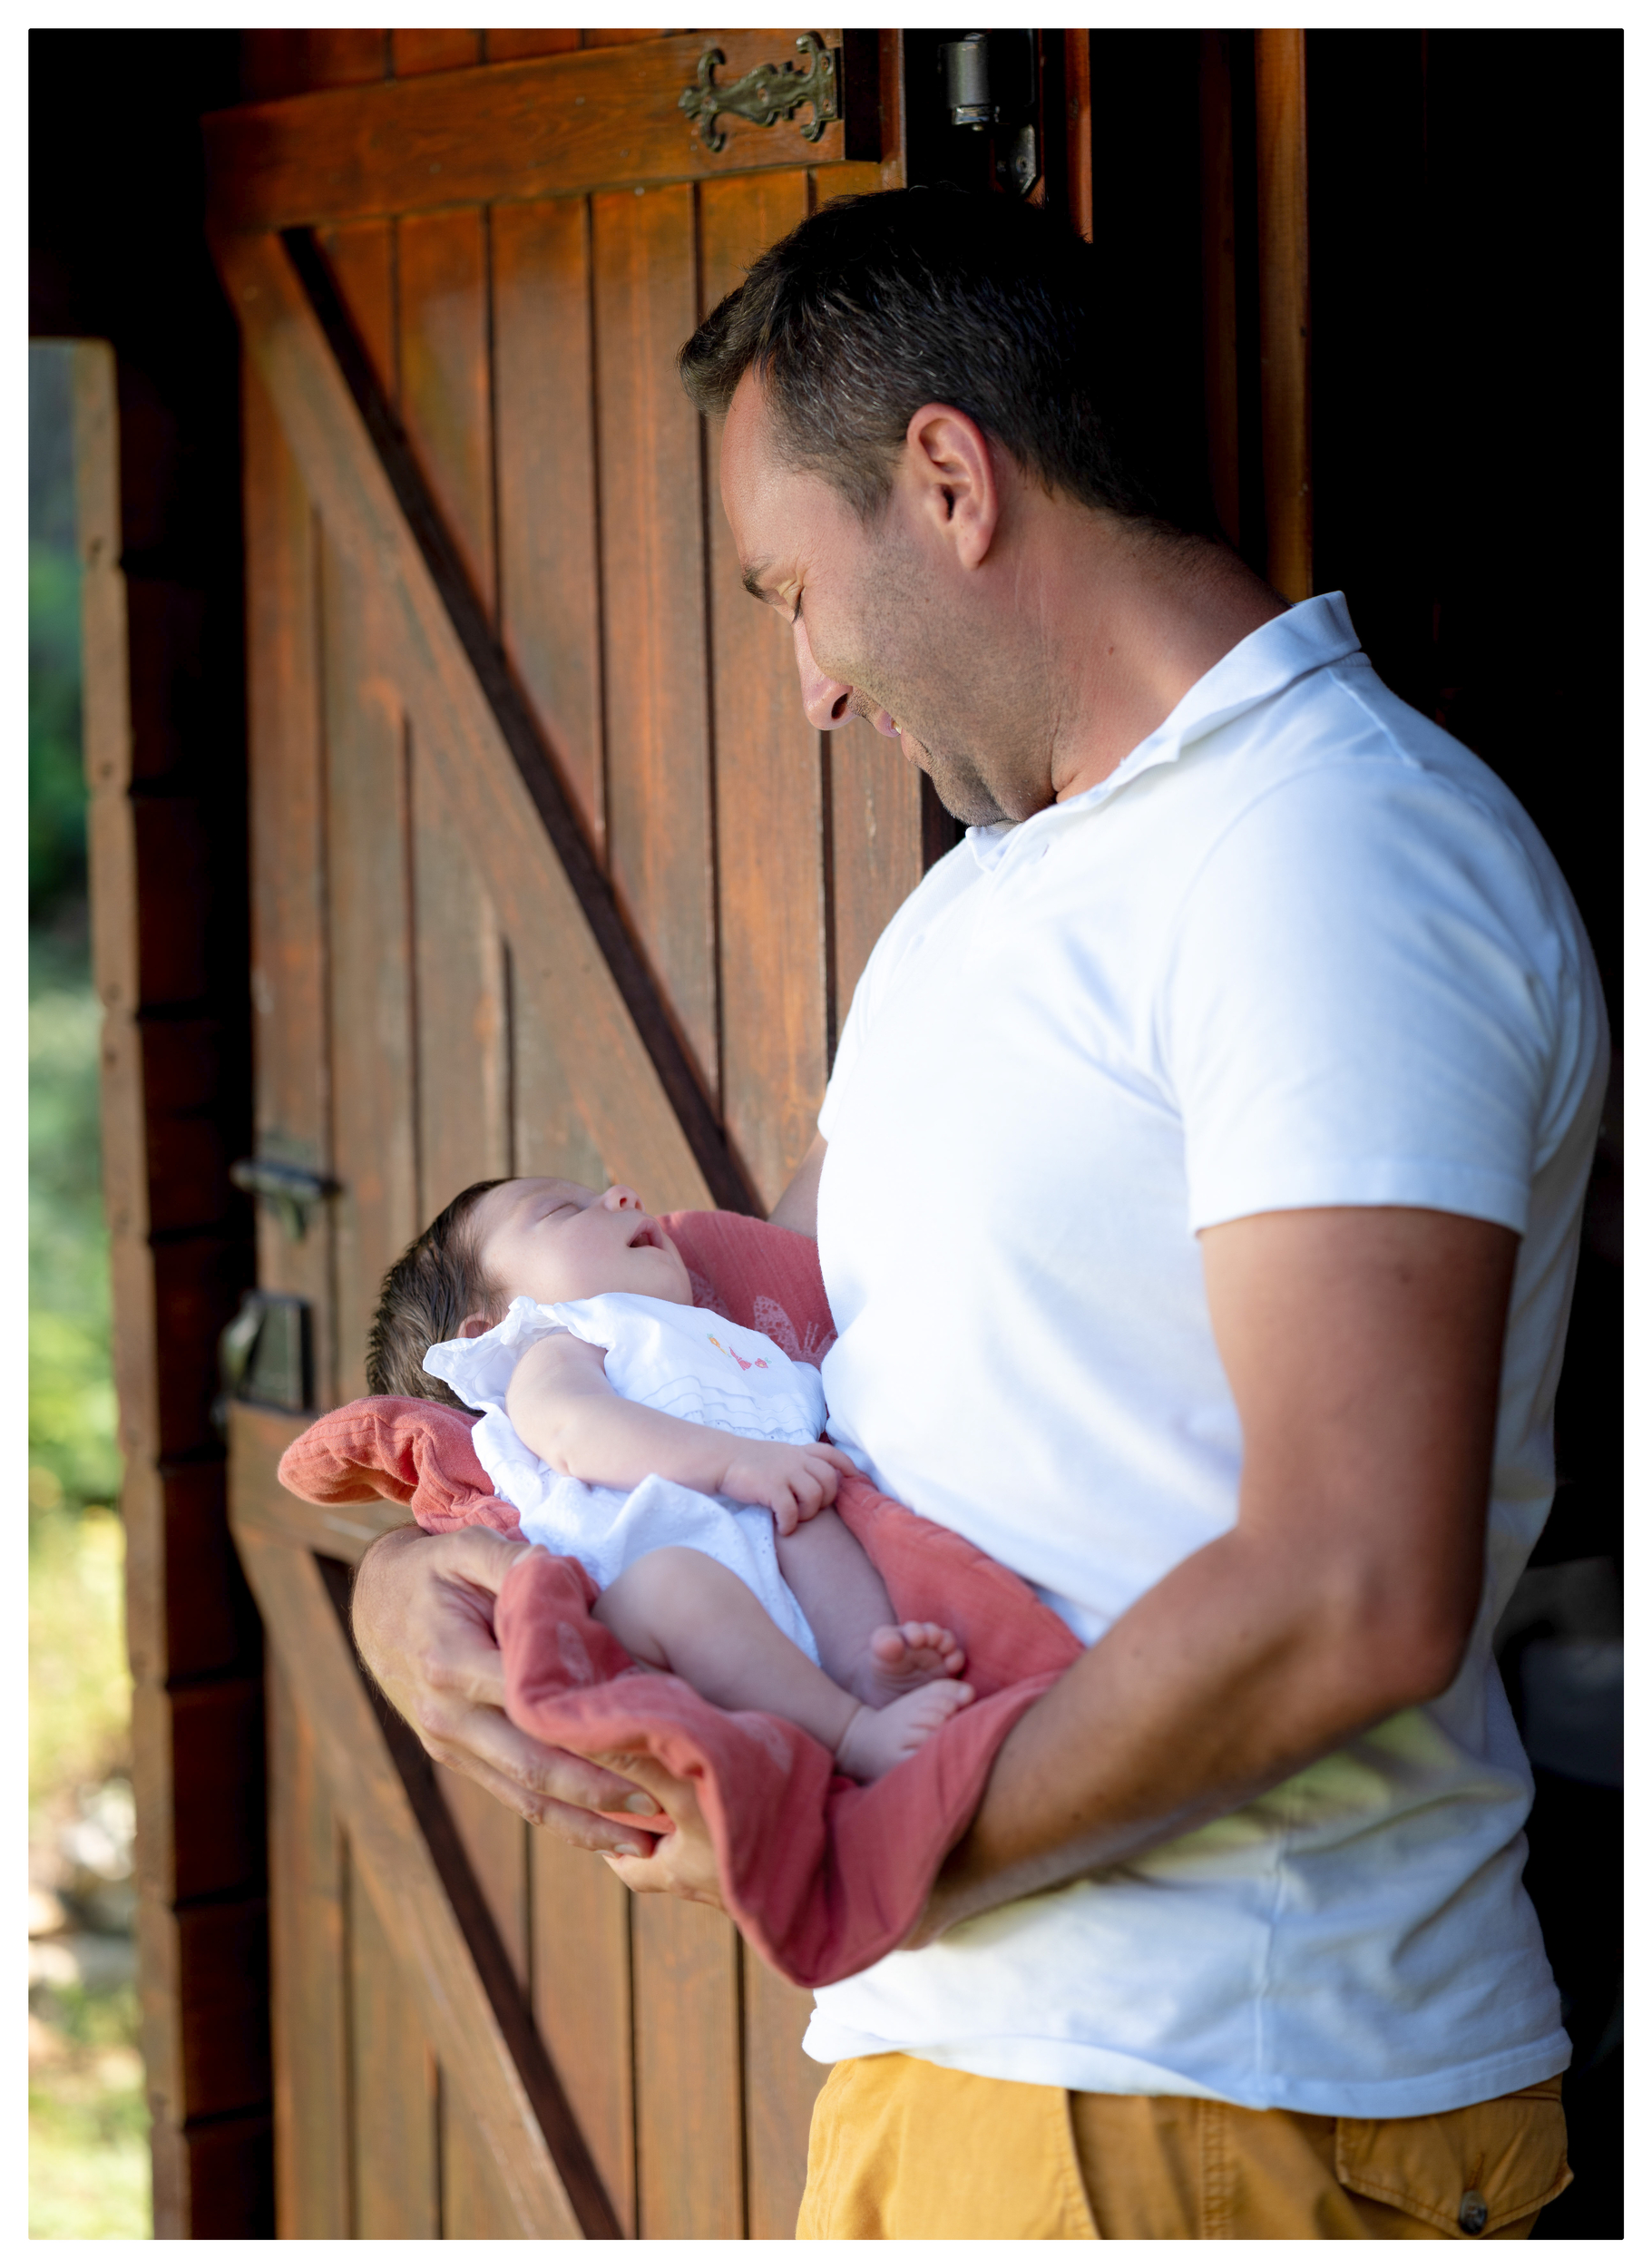 3. topponcino - montessori 0-3 mois -naissance douce - parentalite - futurs parents - futur papa - bebe - allaitement - peau a peau - nourrir bebe -eveil bebe